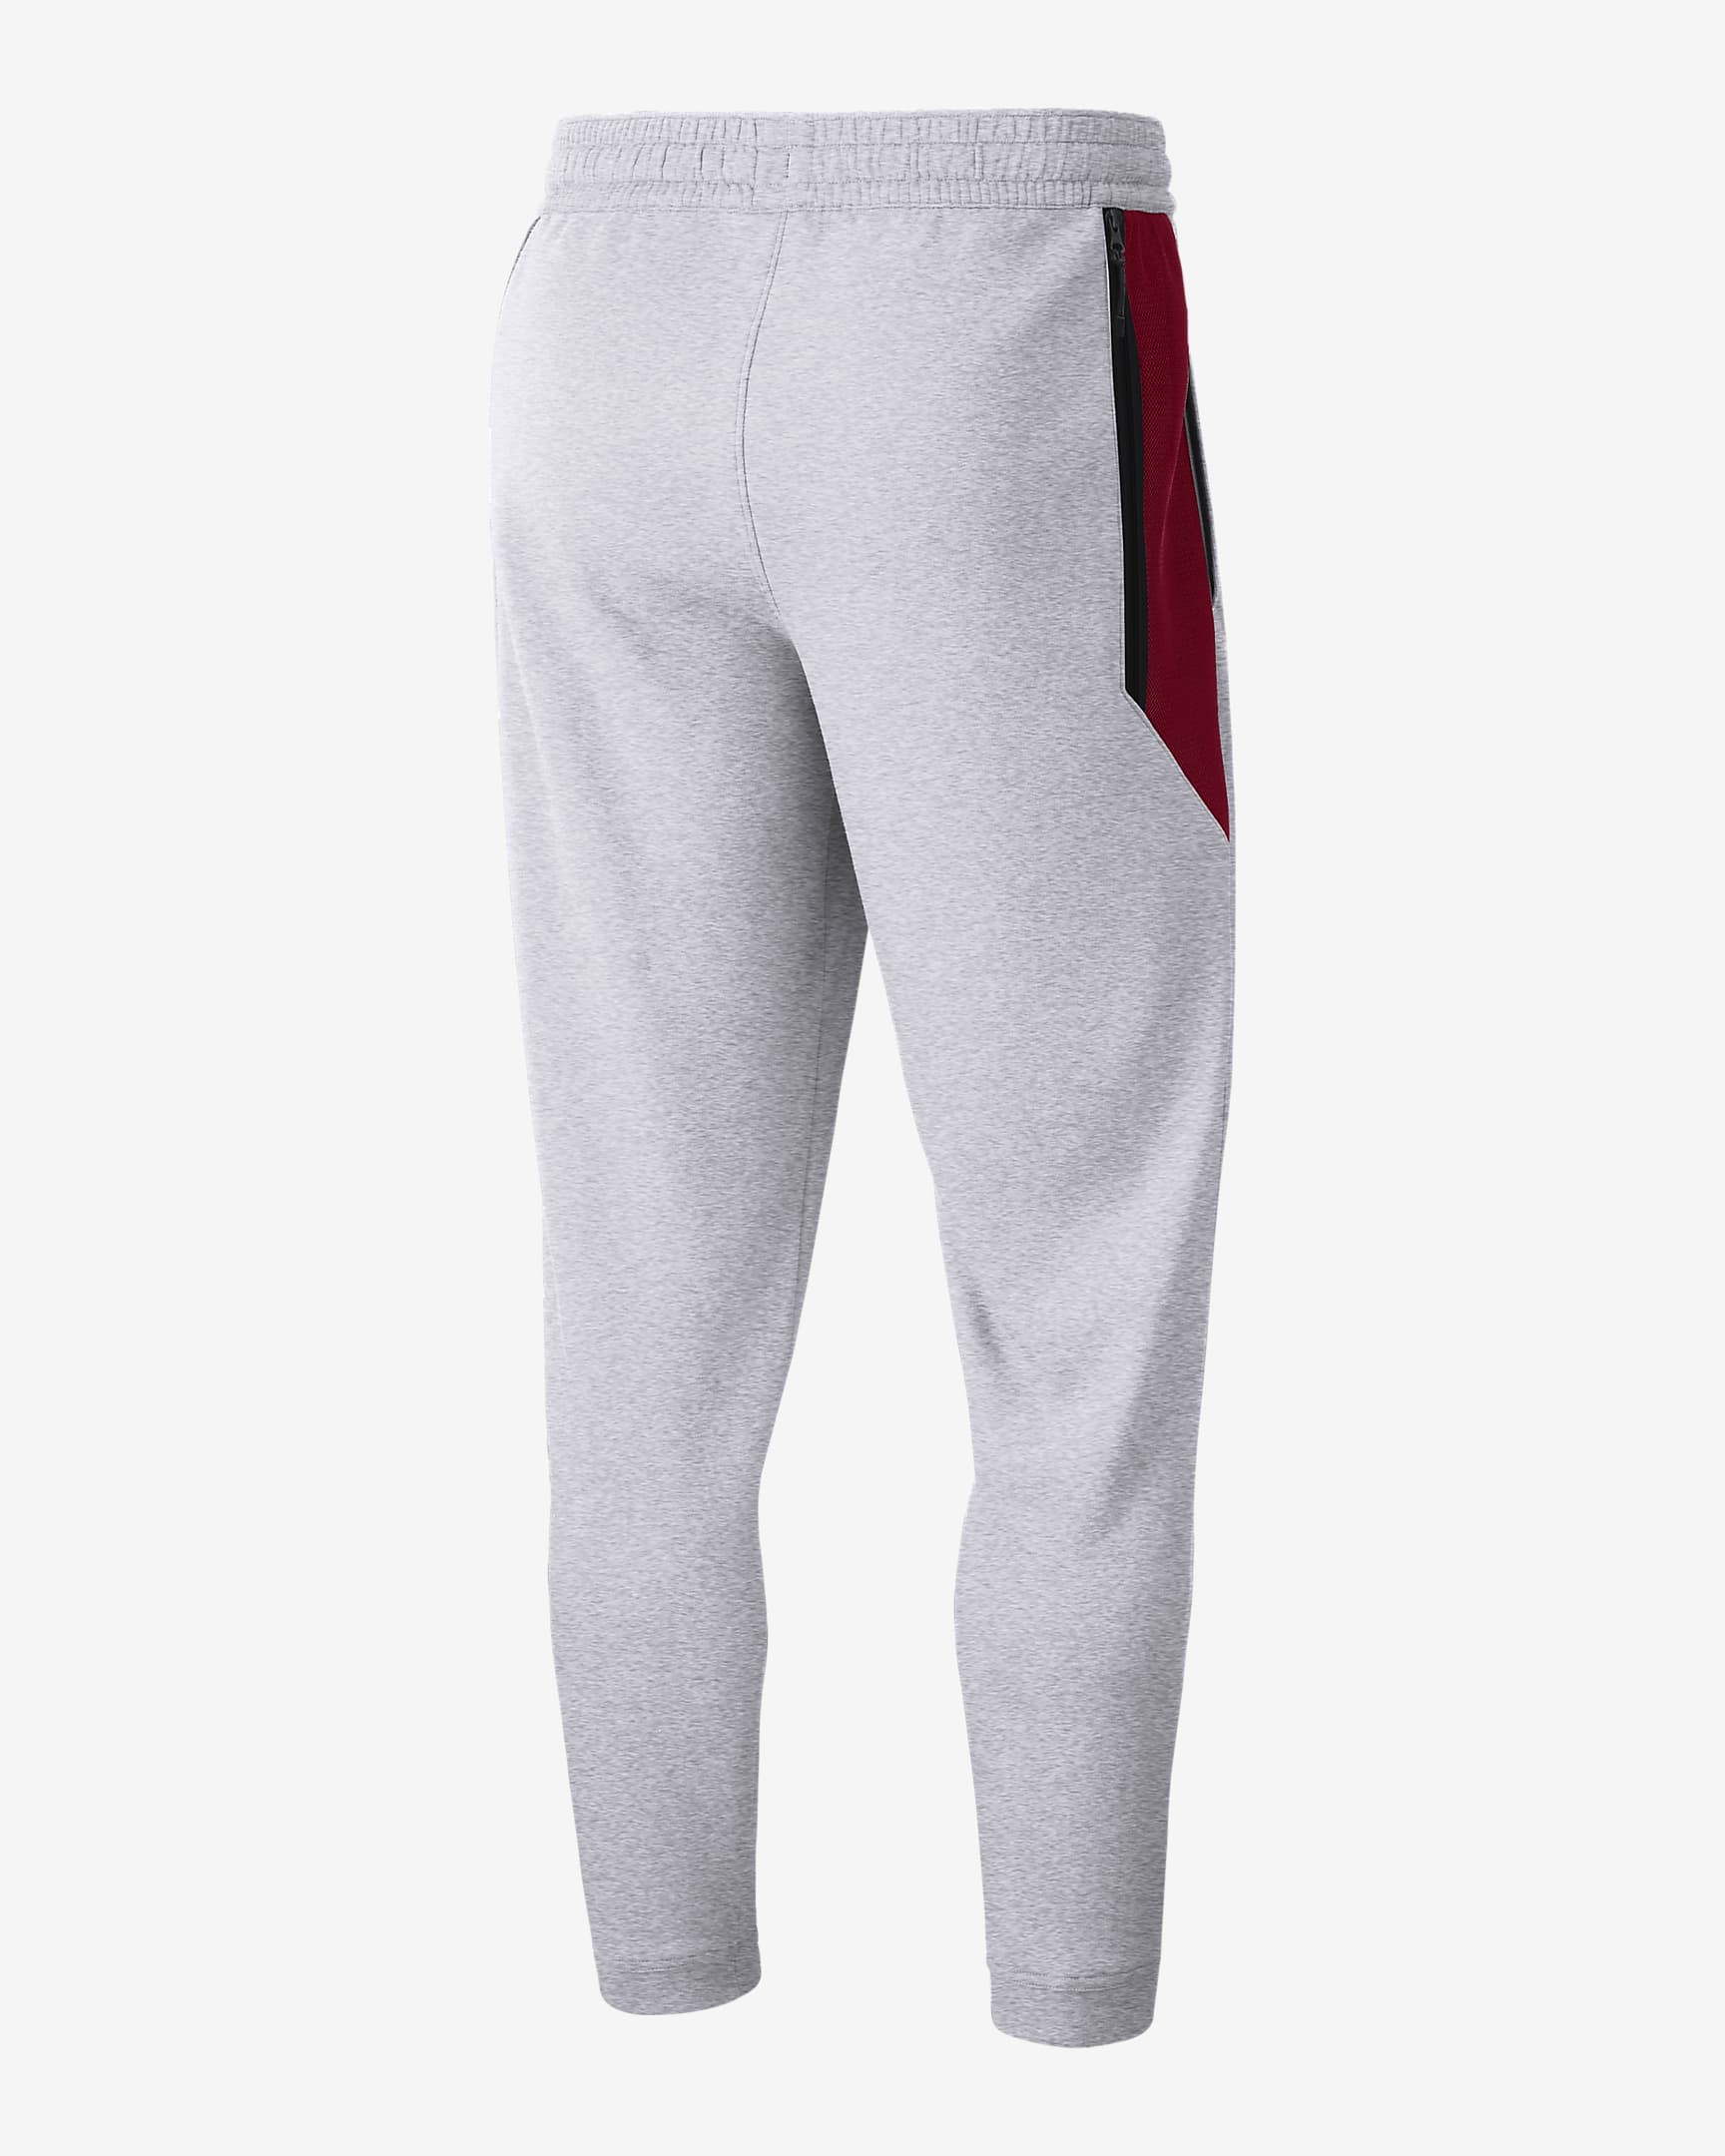 Pantalones para hombre Nike College Spotlight (USC). Nike.com